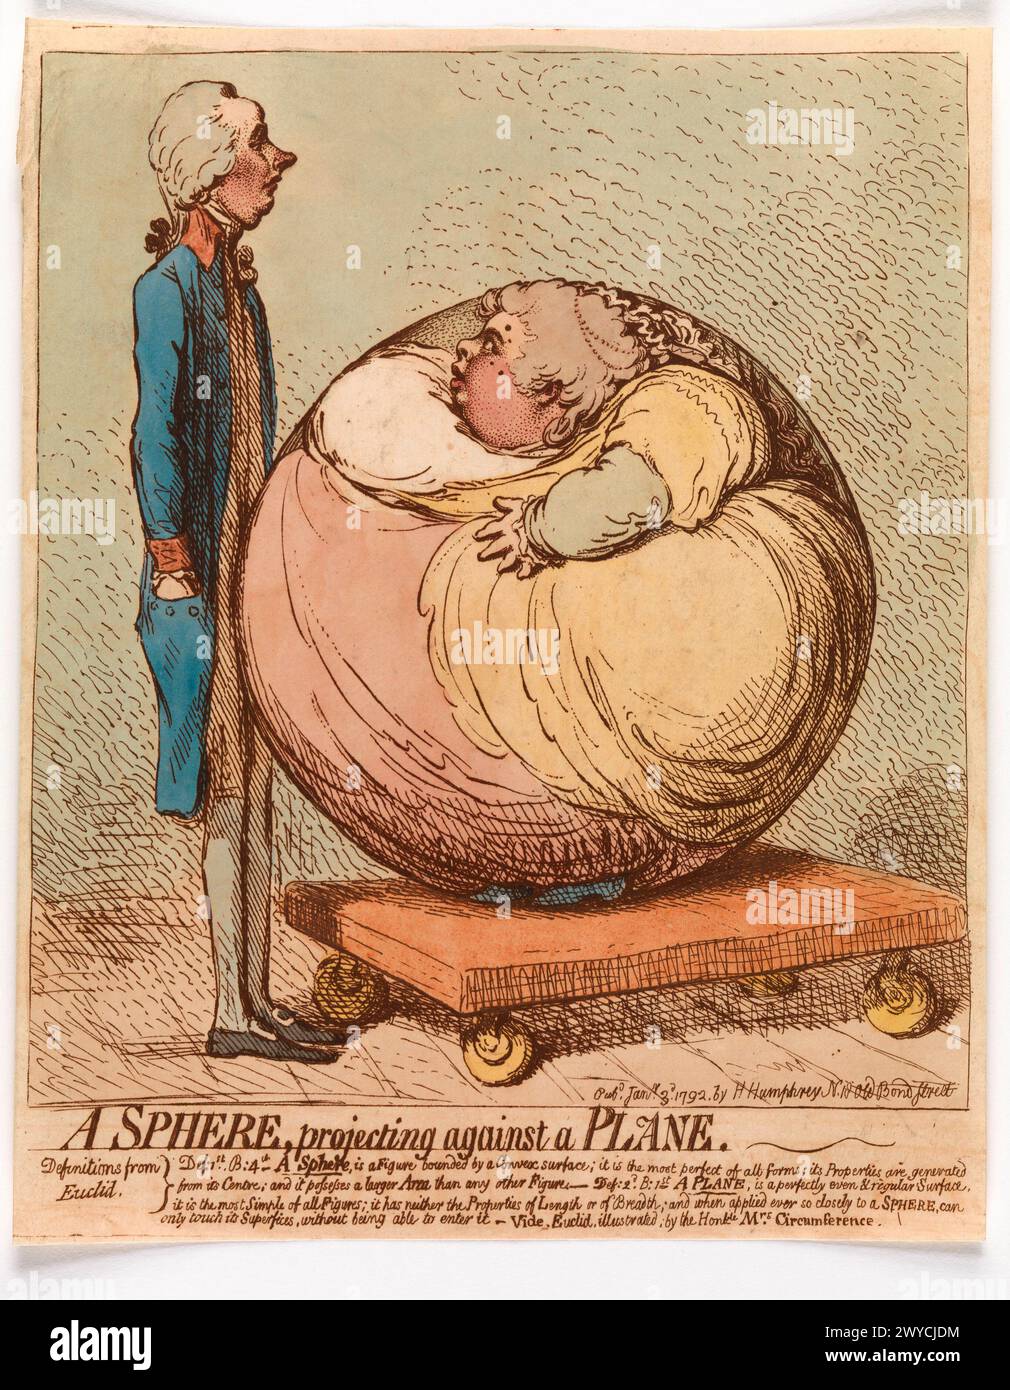 Una sfera che proietta contro un piano. James Gillray, pubblicato da Hannah Humphrey. 3 gennaio 1792. Incisione colorata a mano. Foto Stock